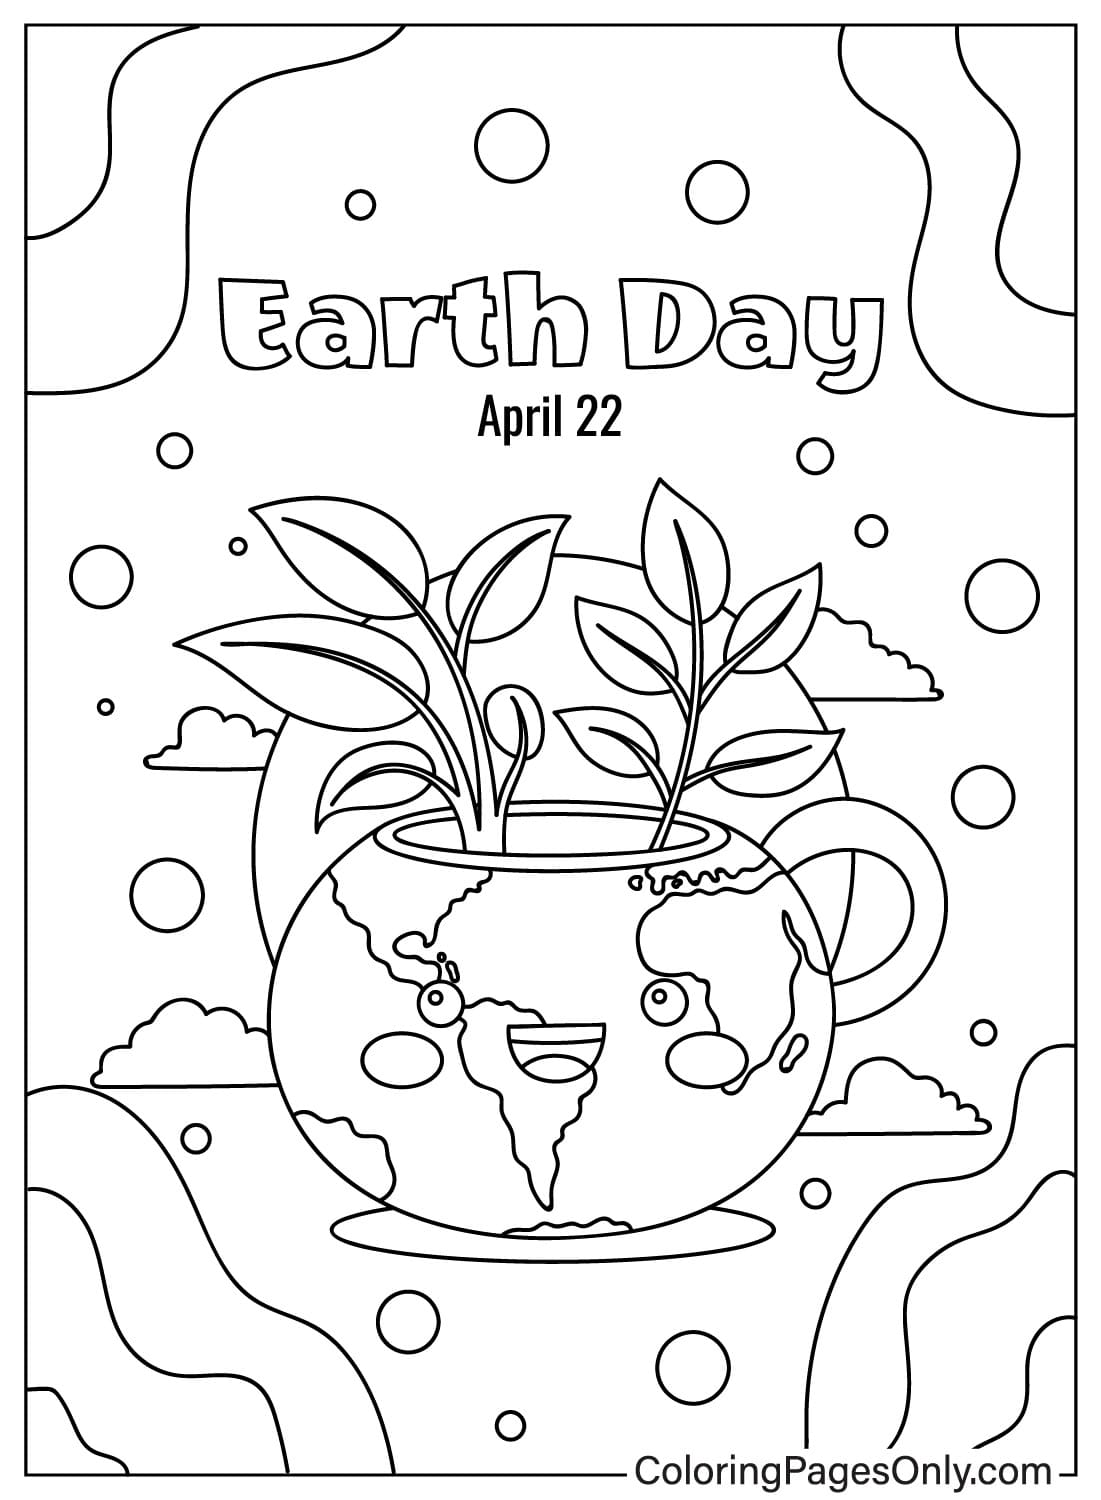 Página para colorear del Día de la Tierra JPG del Día de la Tierra